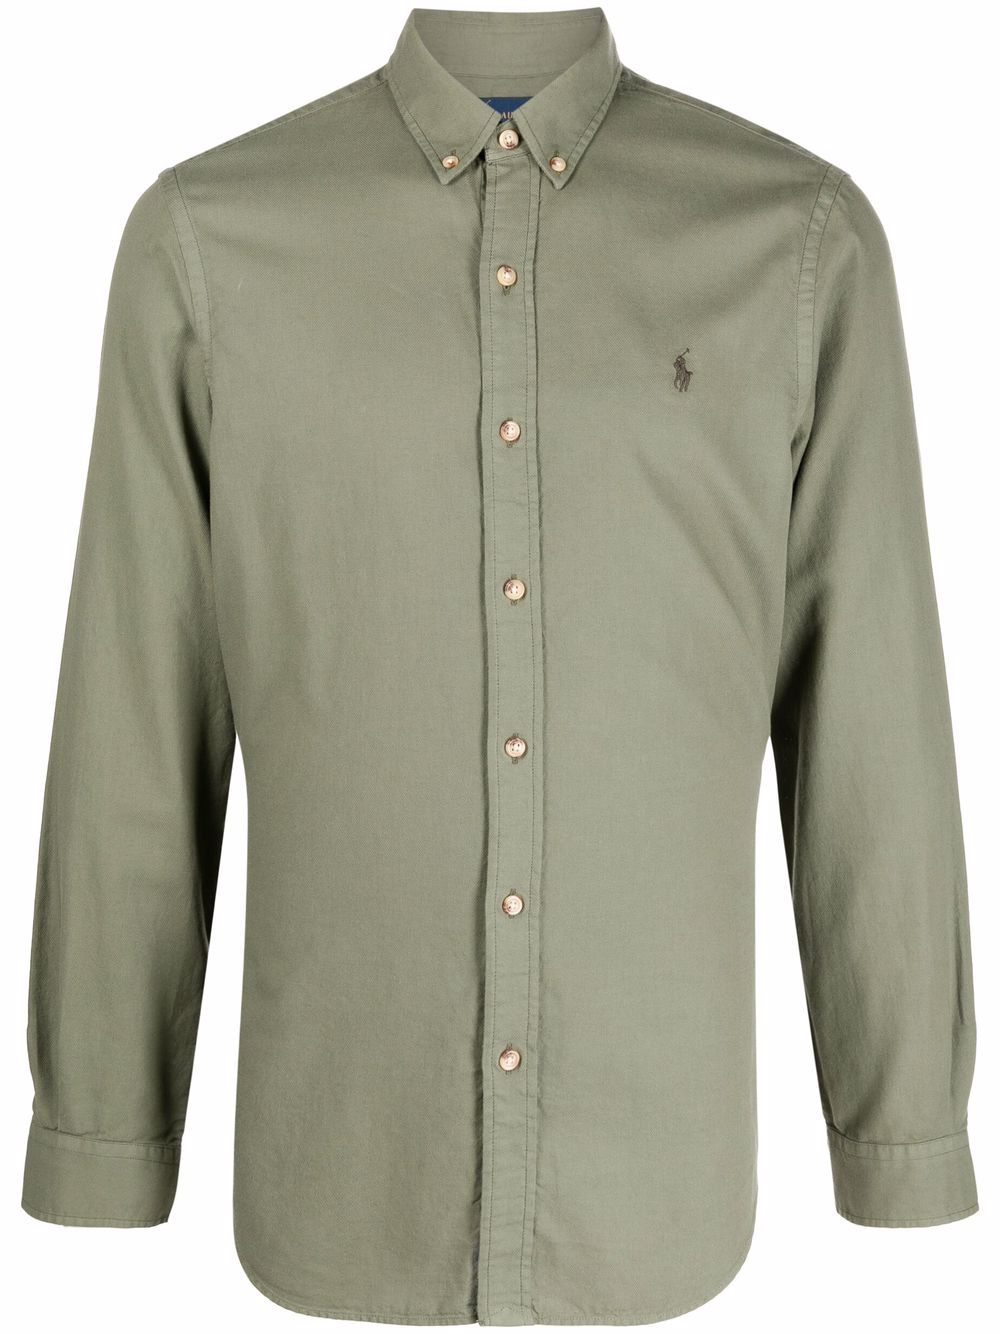 Polo Ralph Lauren plain button shirt - Green von Polo Ralph Lauren